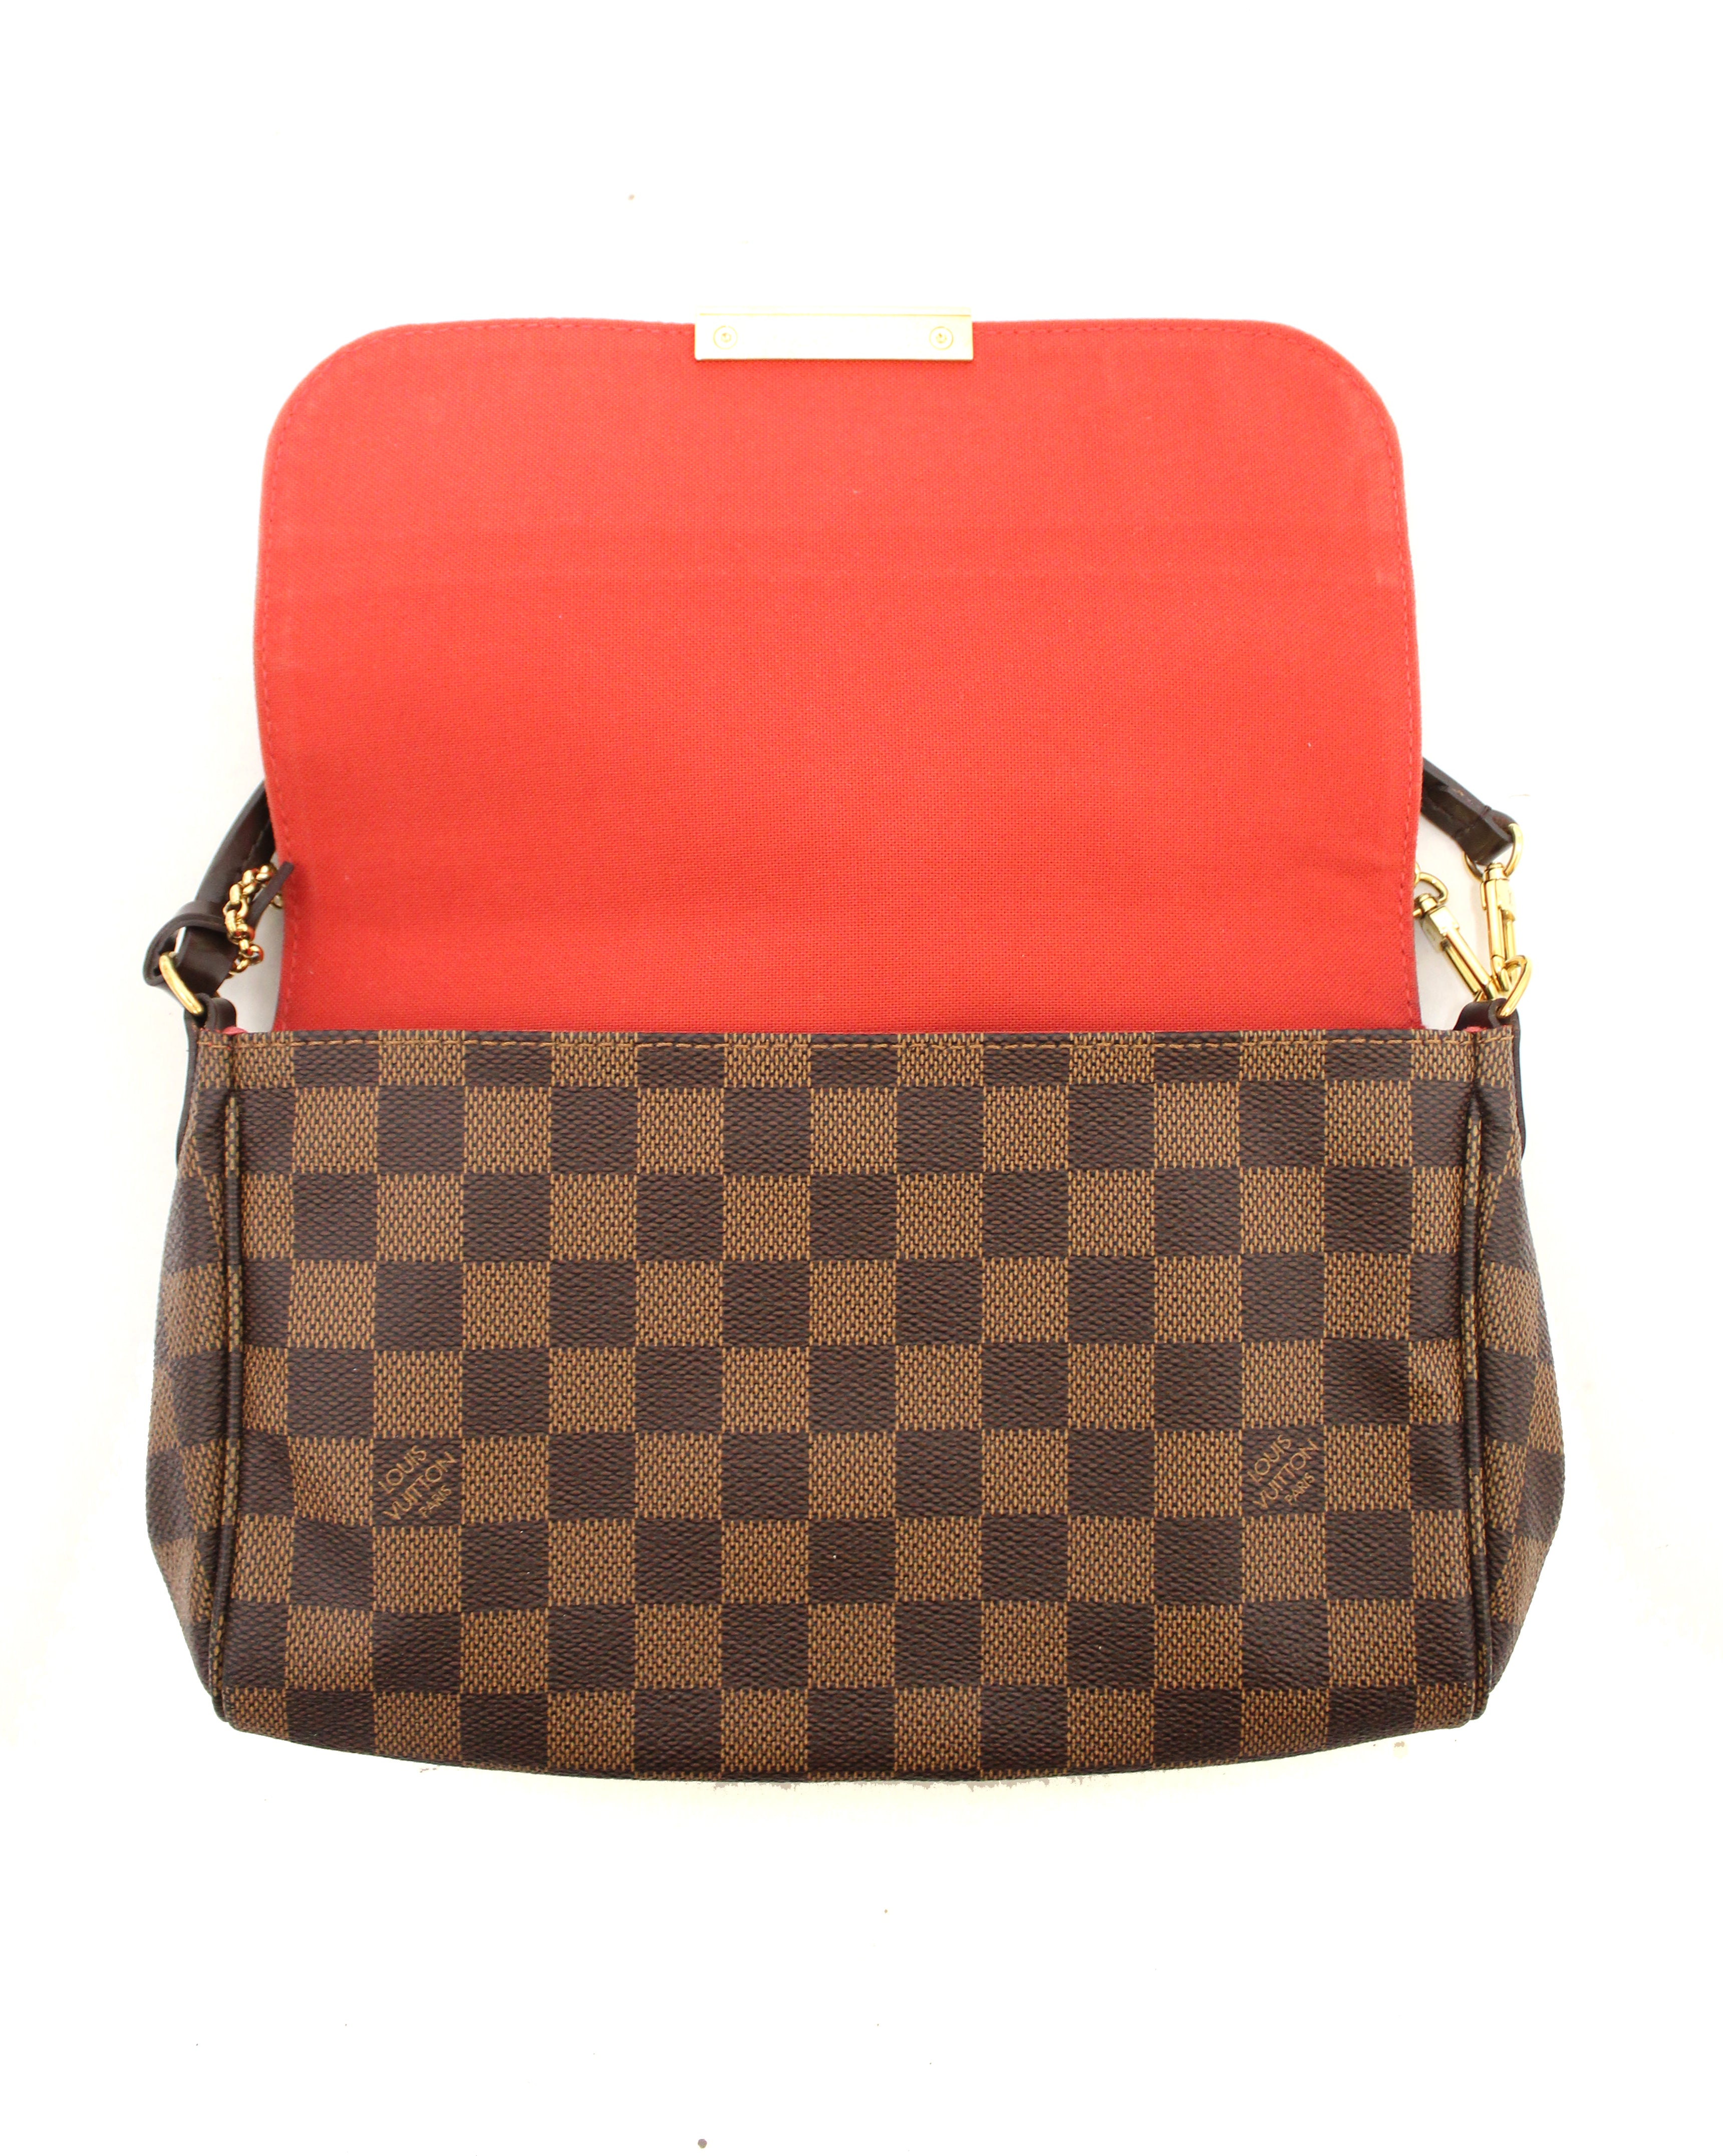 Louis Vuitton Damier Ebene Favorite MM Shoulder Bag Crossbody Authentic